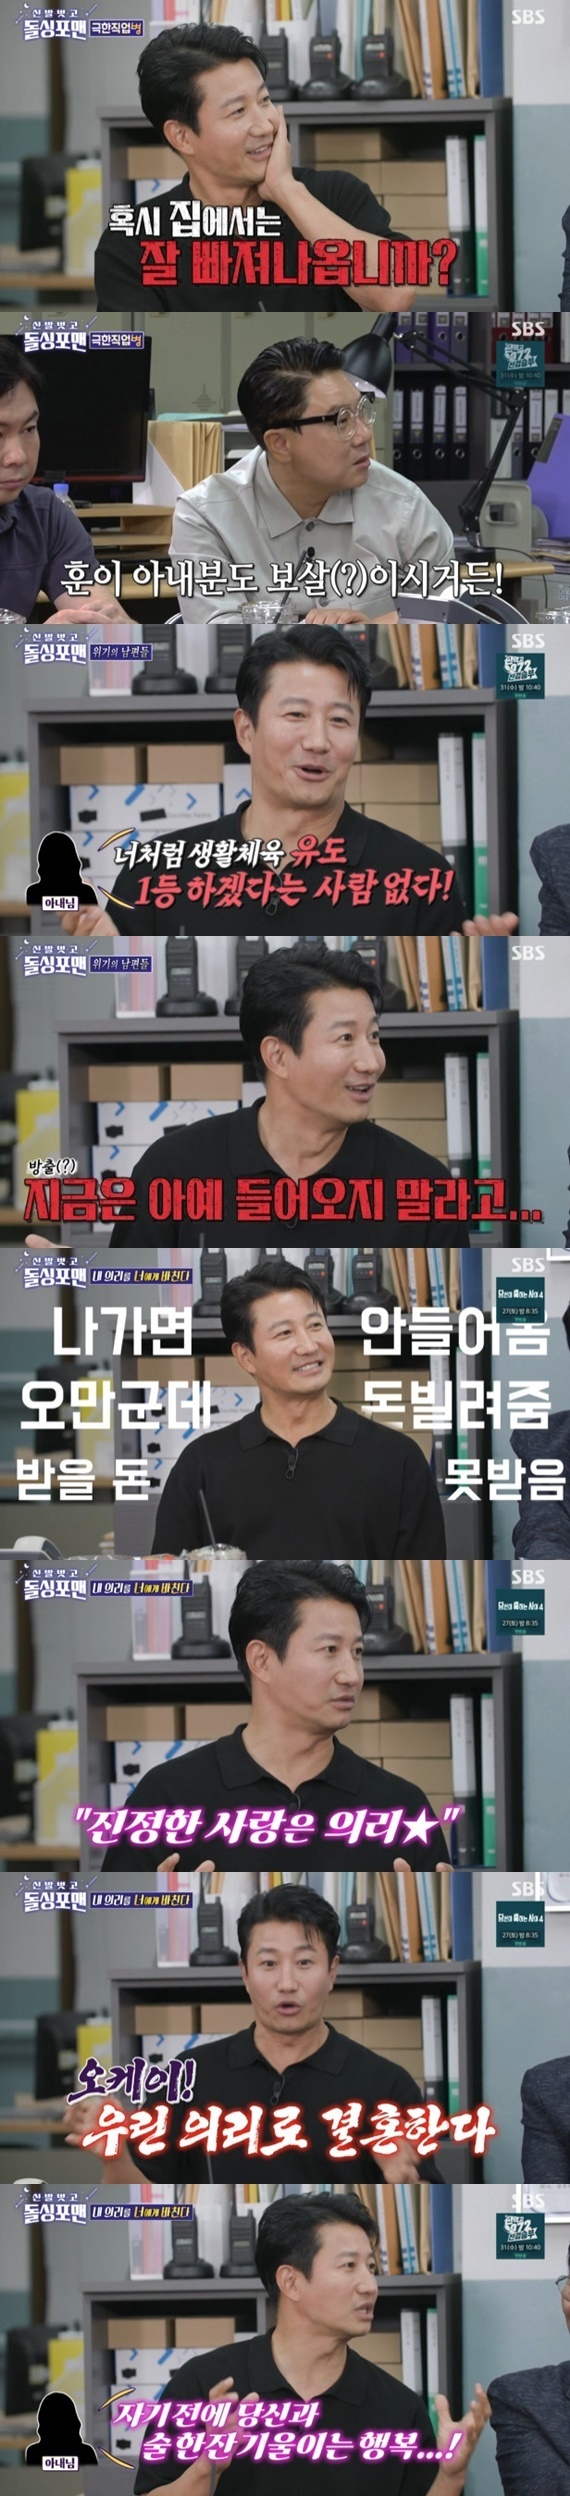 SBS '신발 벗고 돌싱포맨' 캡처